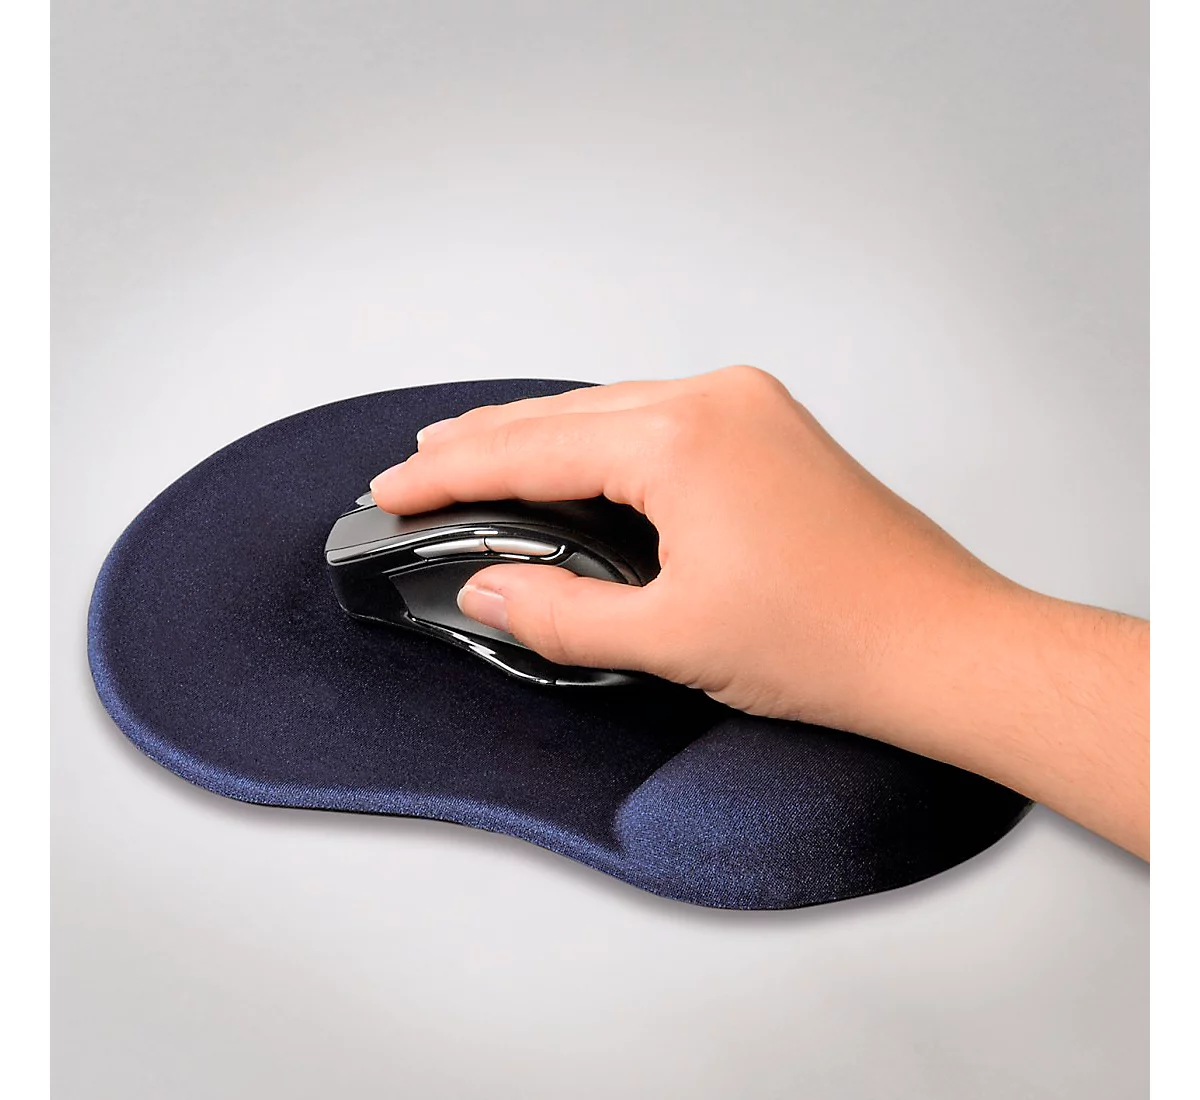 iMoshion Tapis de souris ergonomique - Tapis de souris avec repose